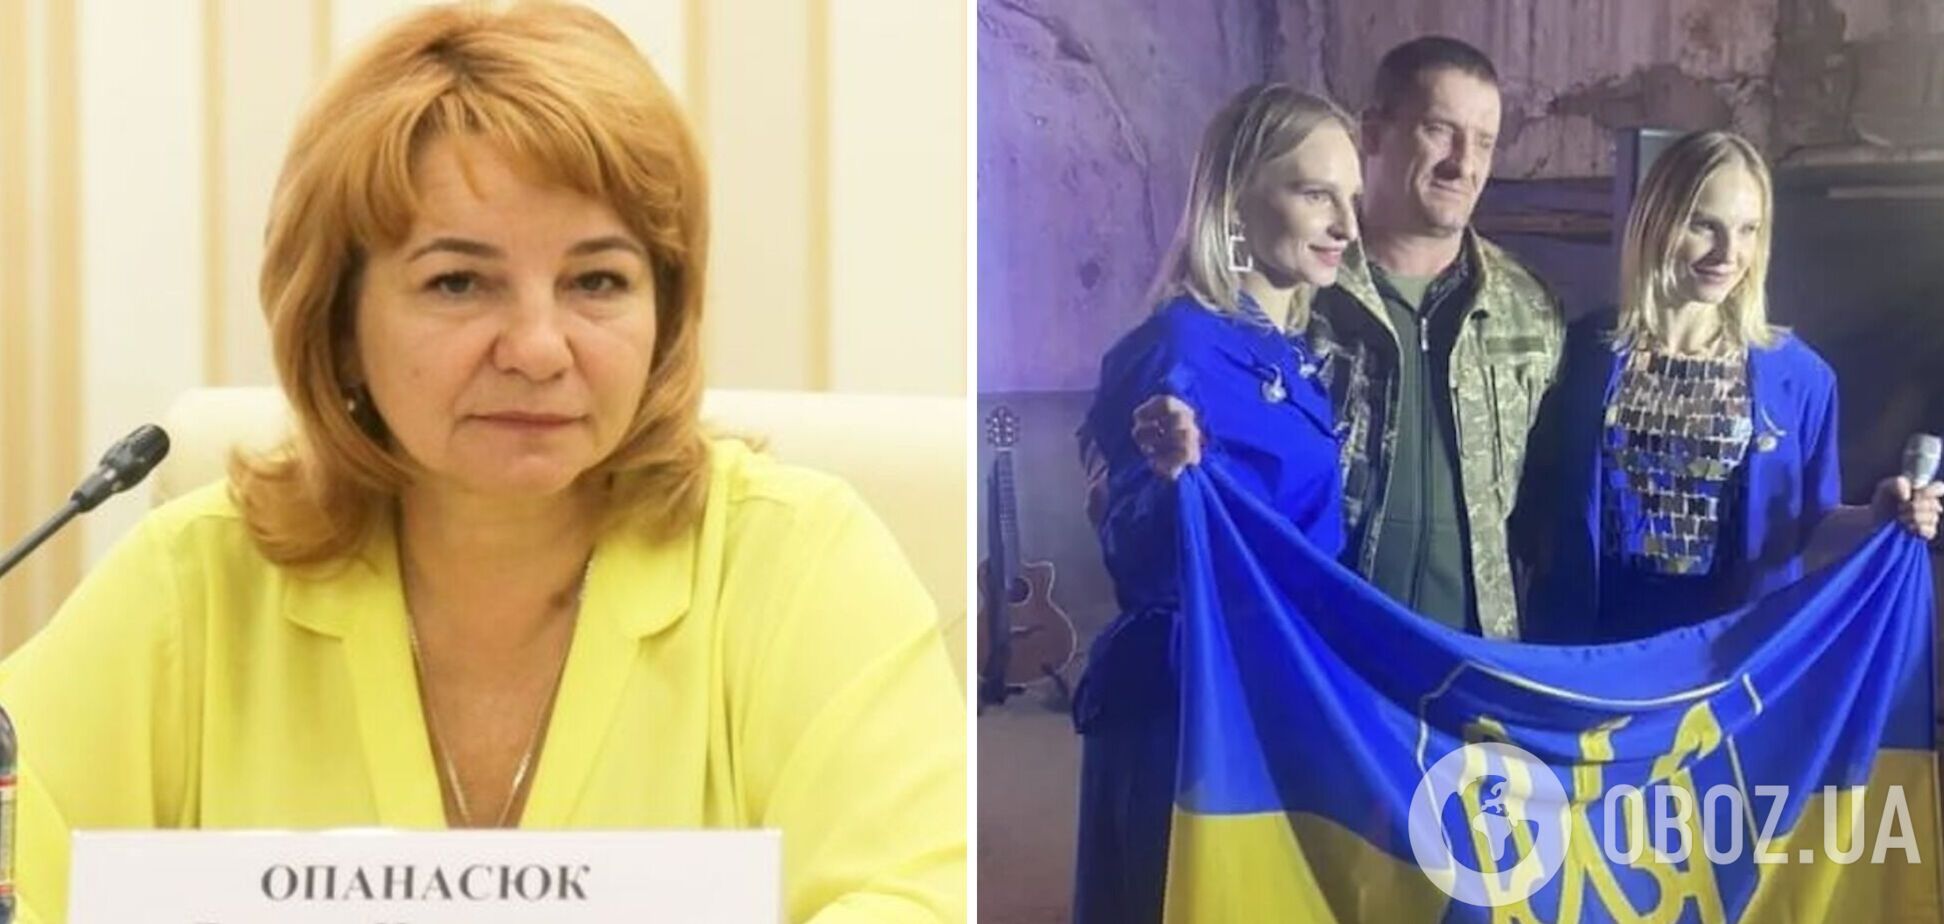 Мать скандальных сестер Anna Maria уволилась с должности 'уполномоченной по правам человека' в Крыму: детали